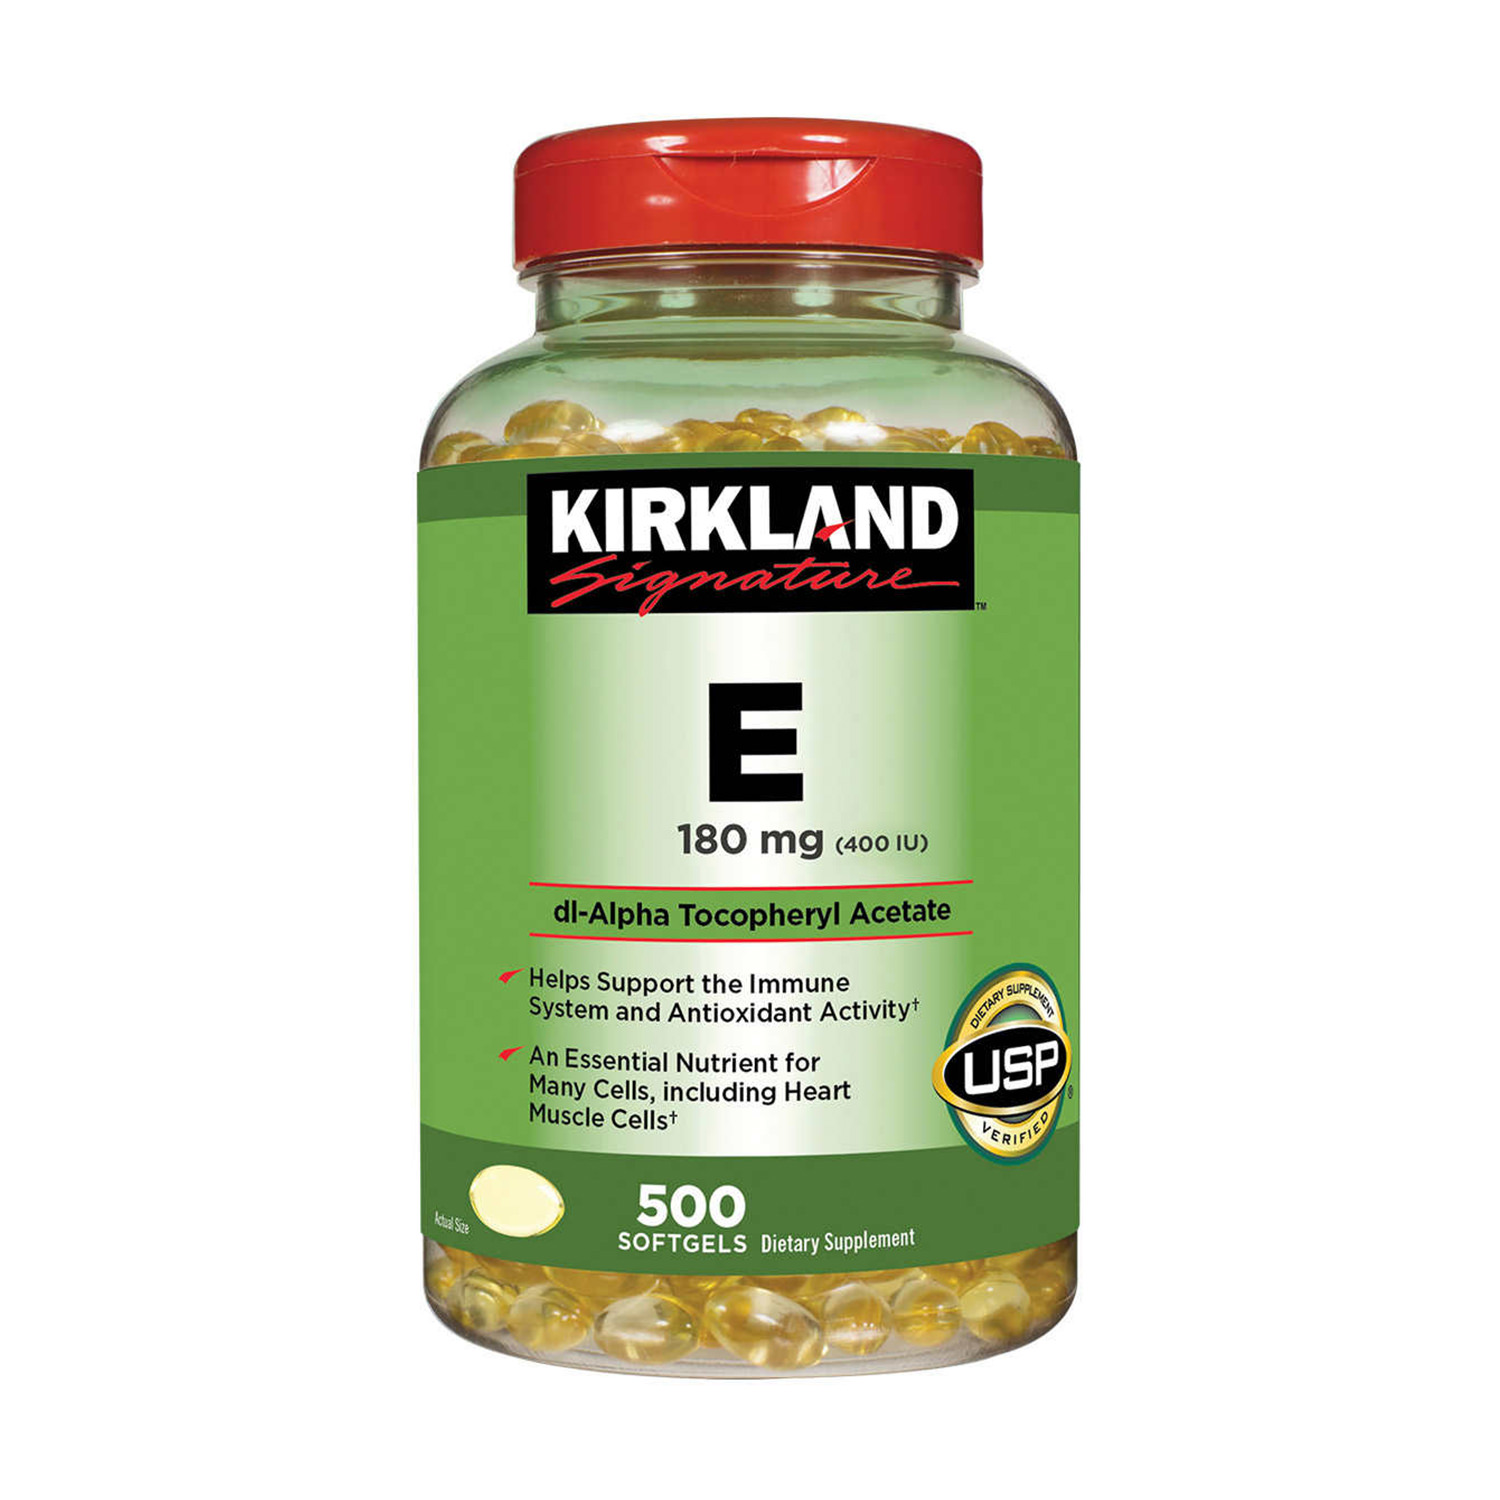 Viên uống vitamin E của mỹ Kirkland Signature 400IU giúp đẹp da, chống lão hóa loại 500 viên.